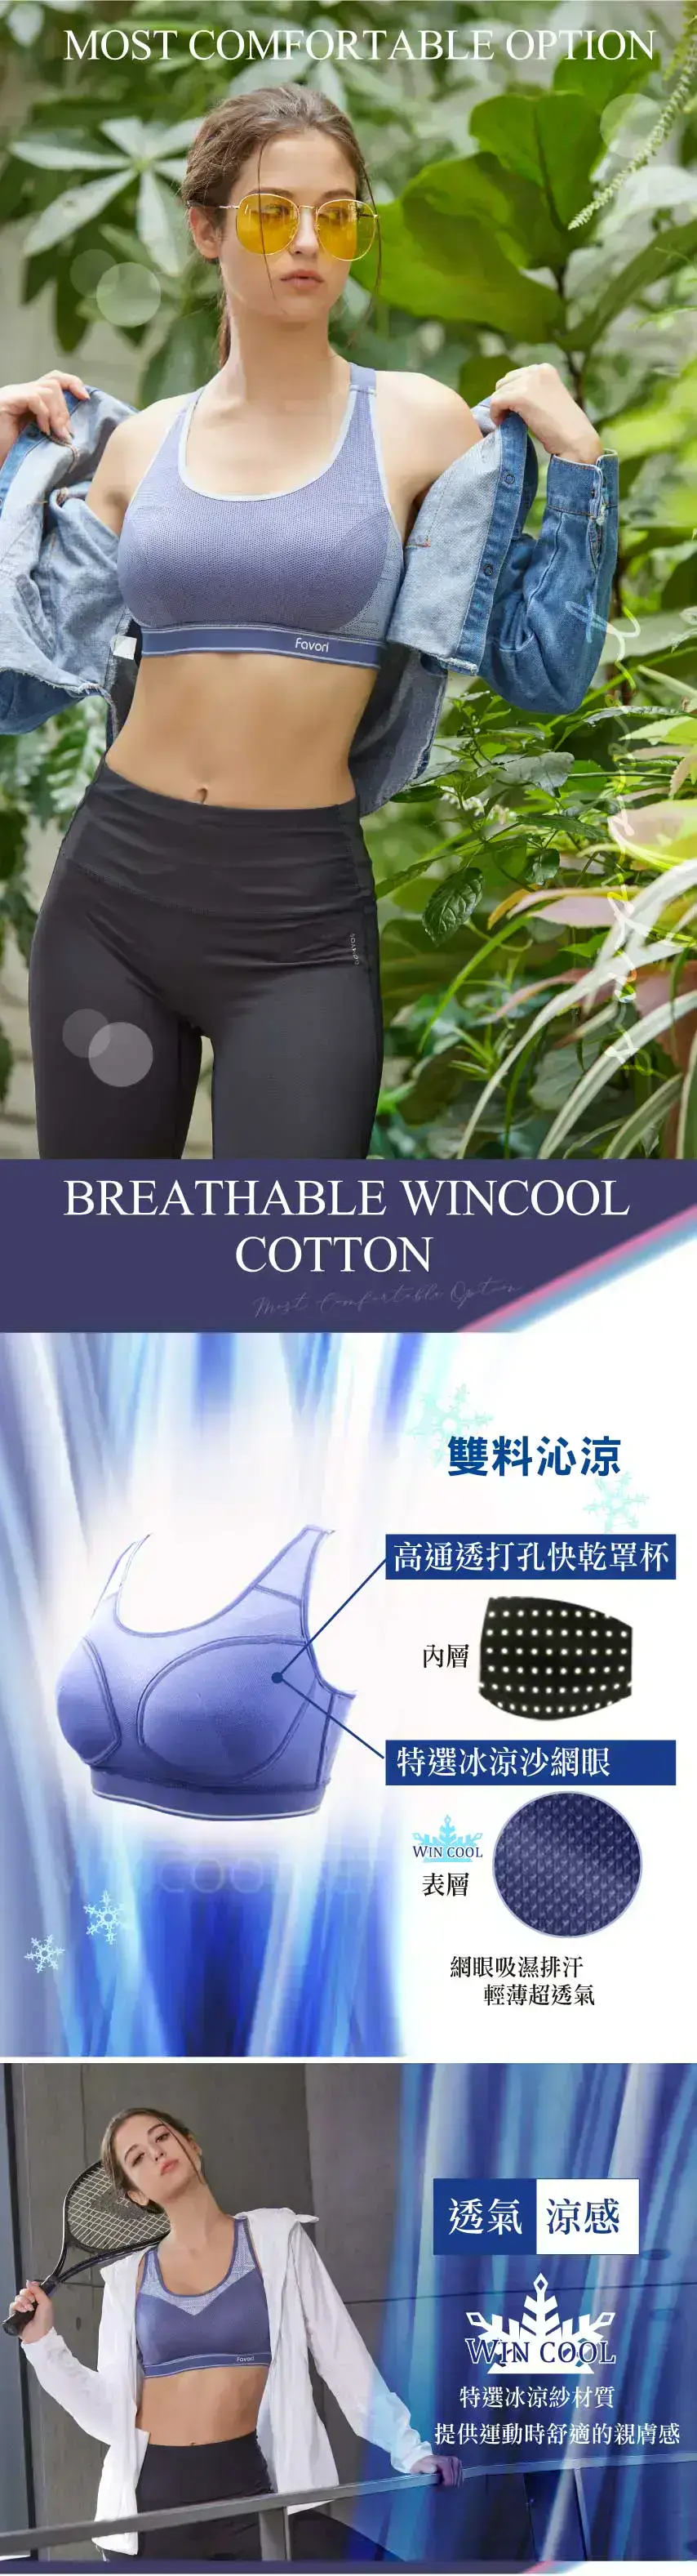 中機能WINCOOL不受拘束罩杯專業運動胸衣(銀河紫)